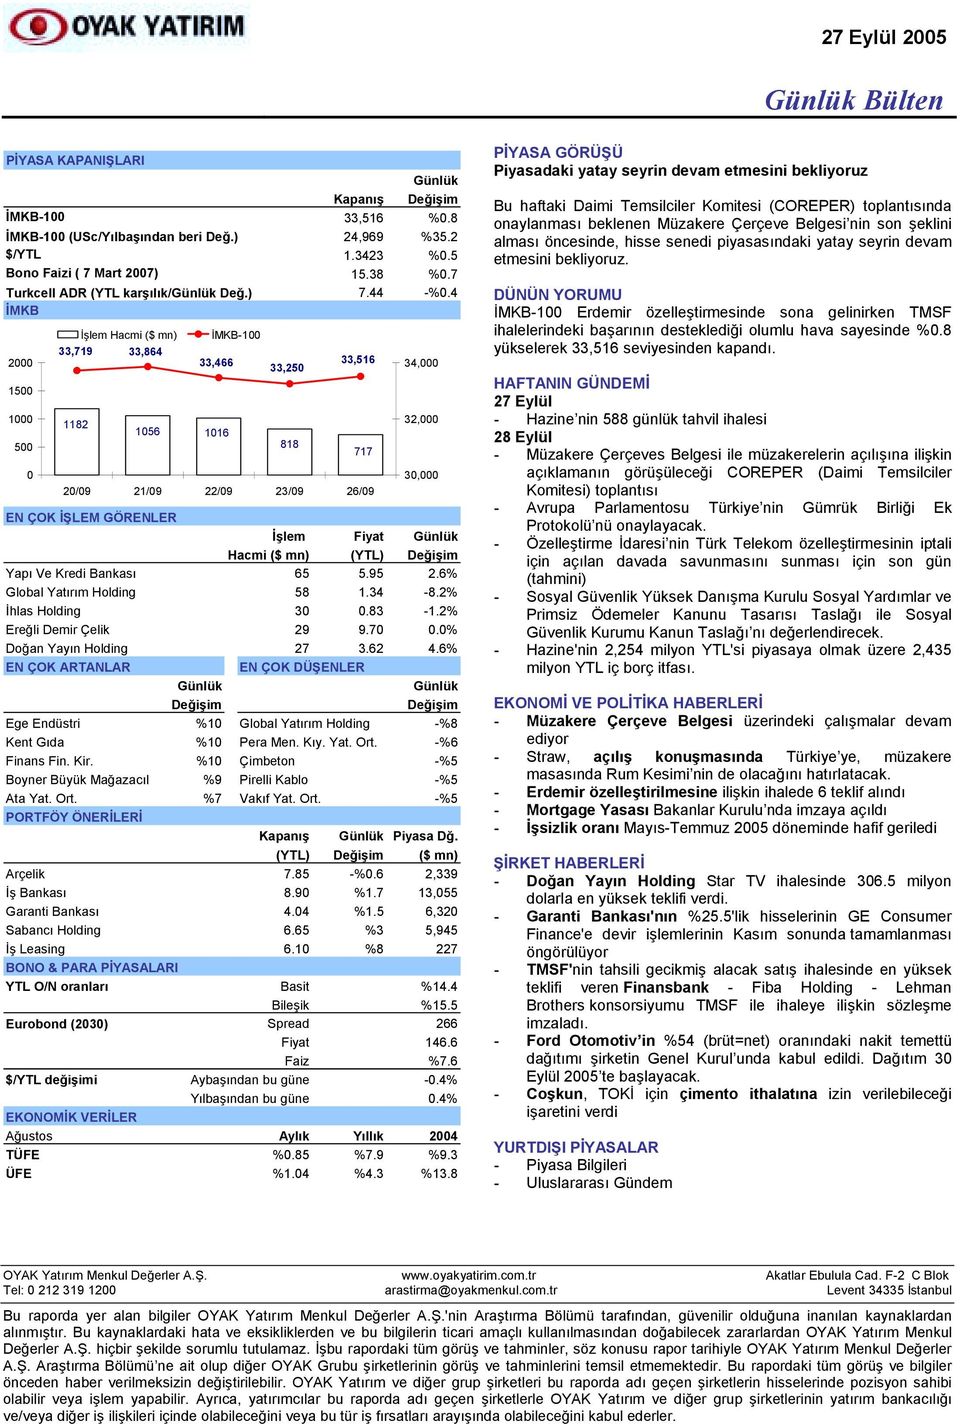 6% Global Yatõrõm Holding 58 1.34-8.2% İhlas Holding 30 0.83-1.2% Ereğli Demir Çelik 29 9.70 0.0% Doğan Yayõn Holding 27 3.62 4.